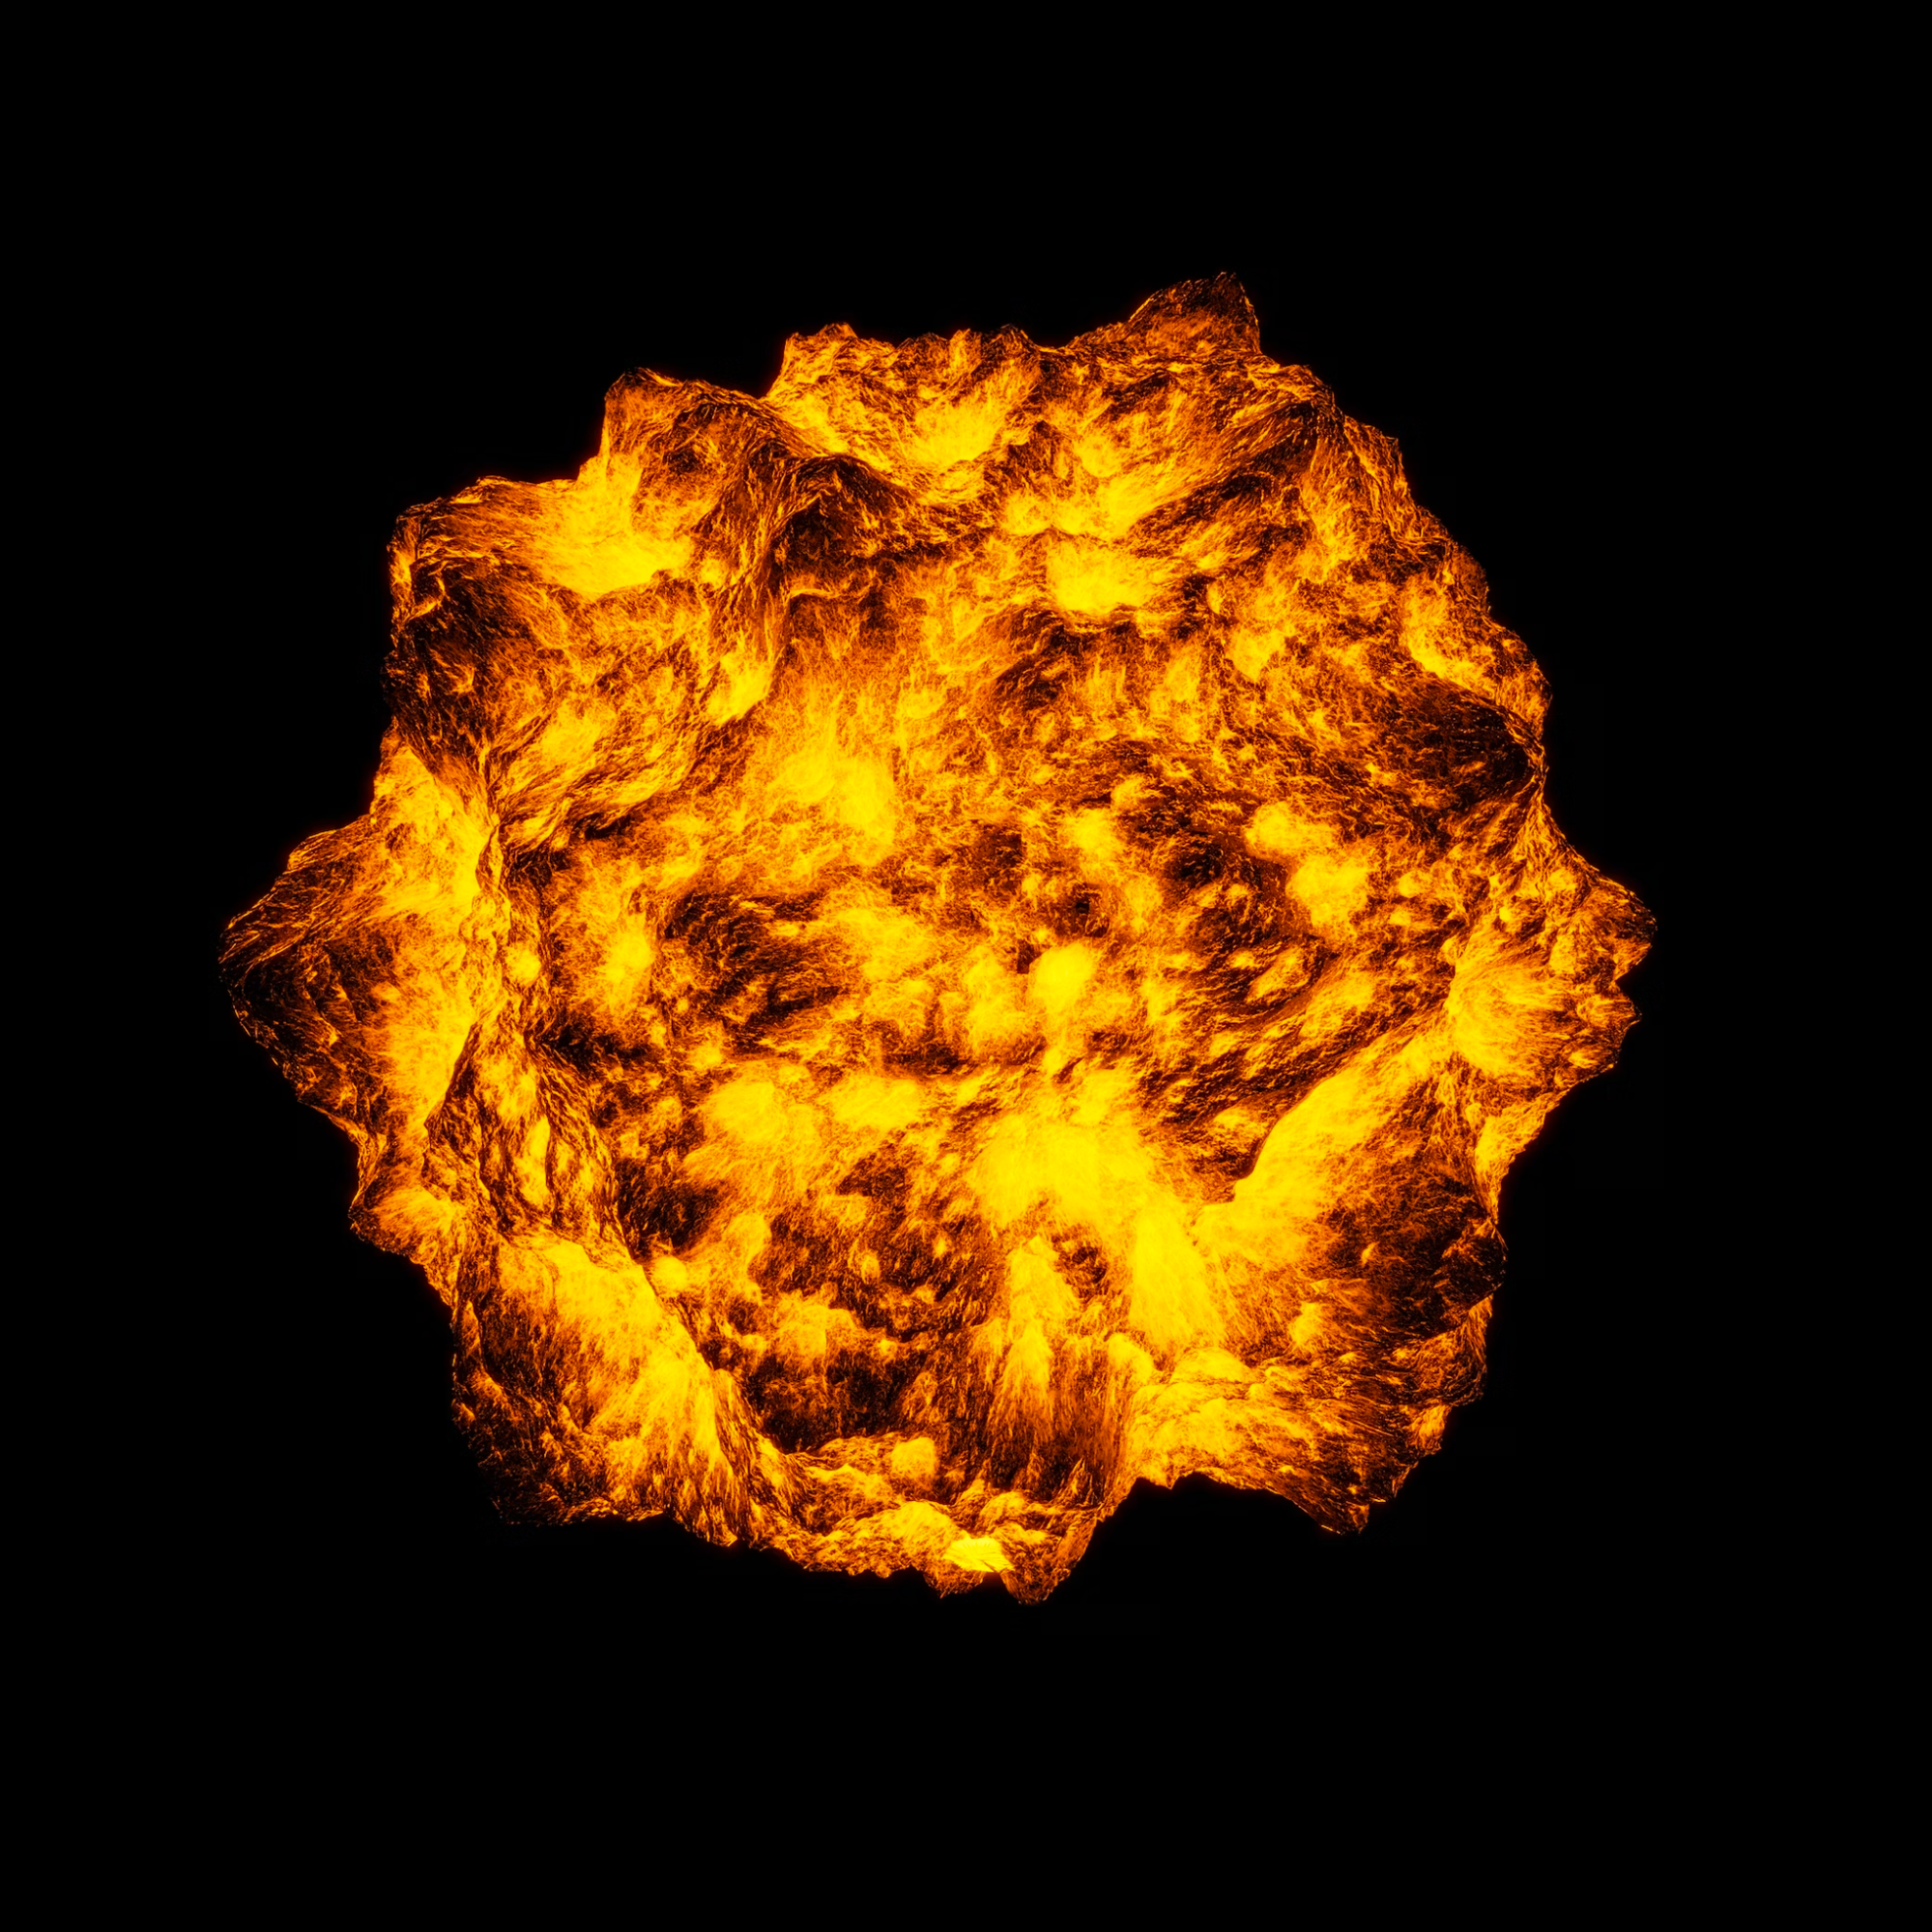 A fiery explosion